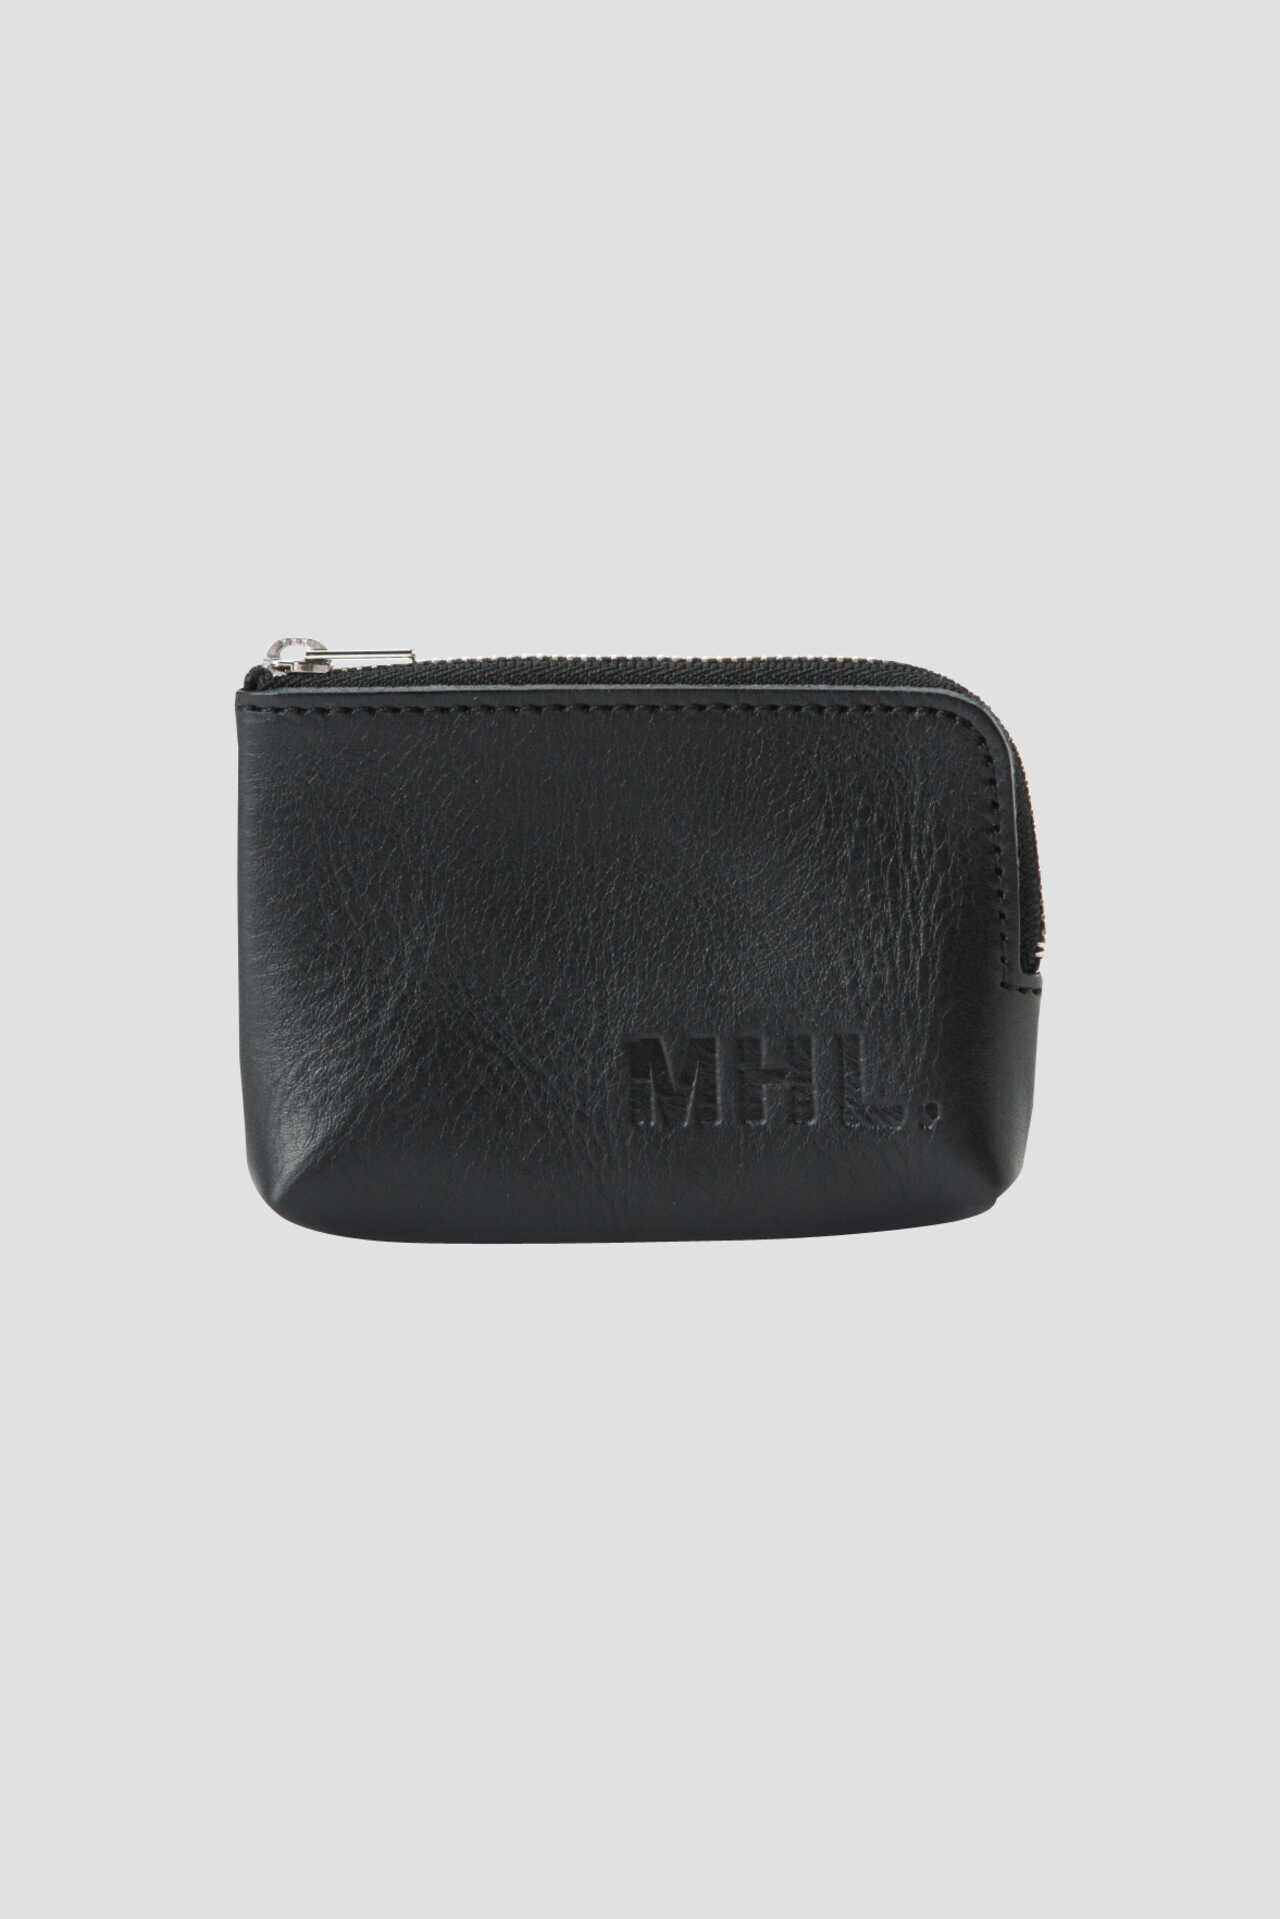 MHL 財布